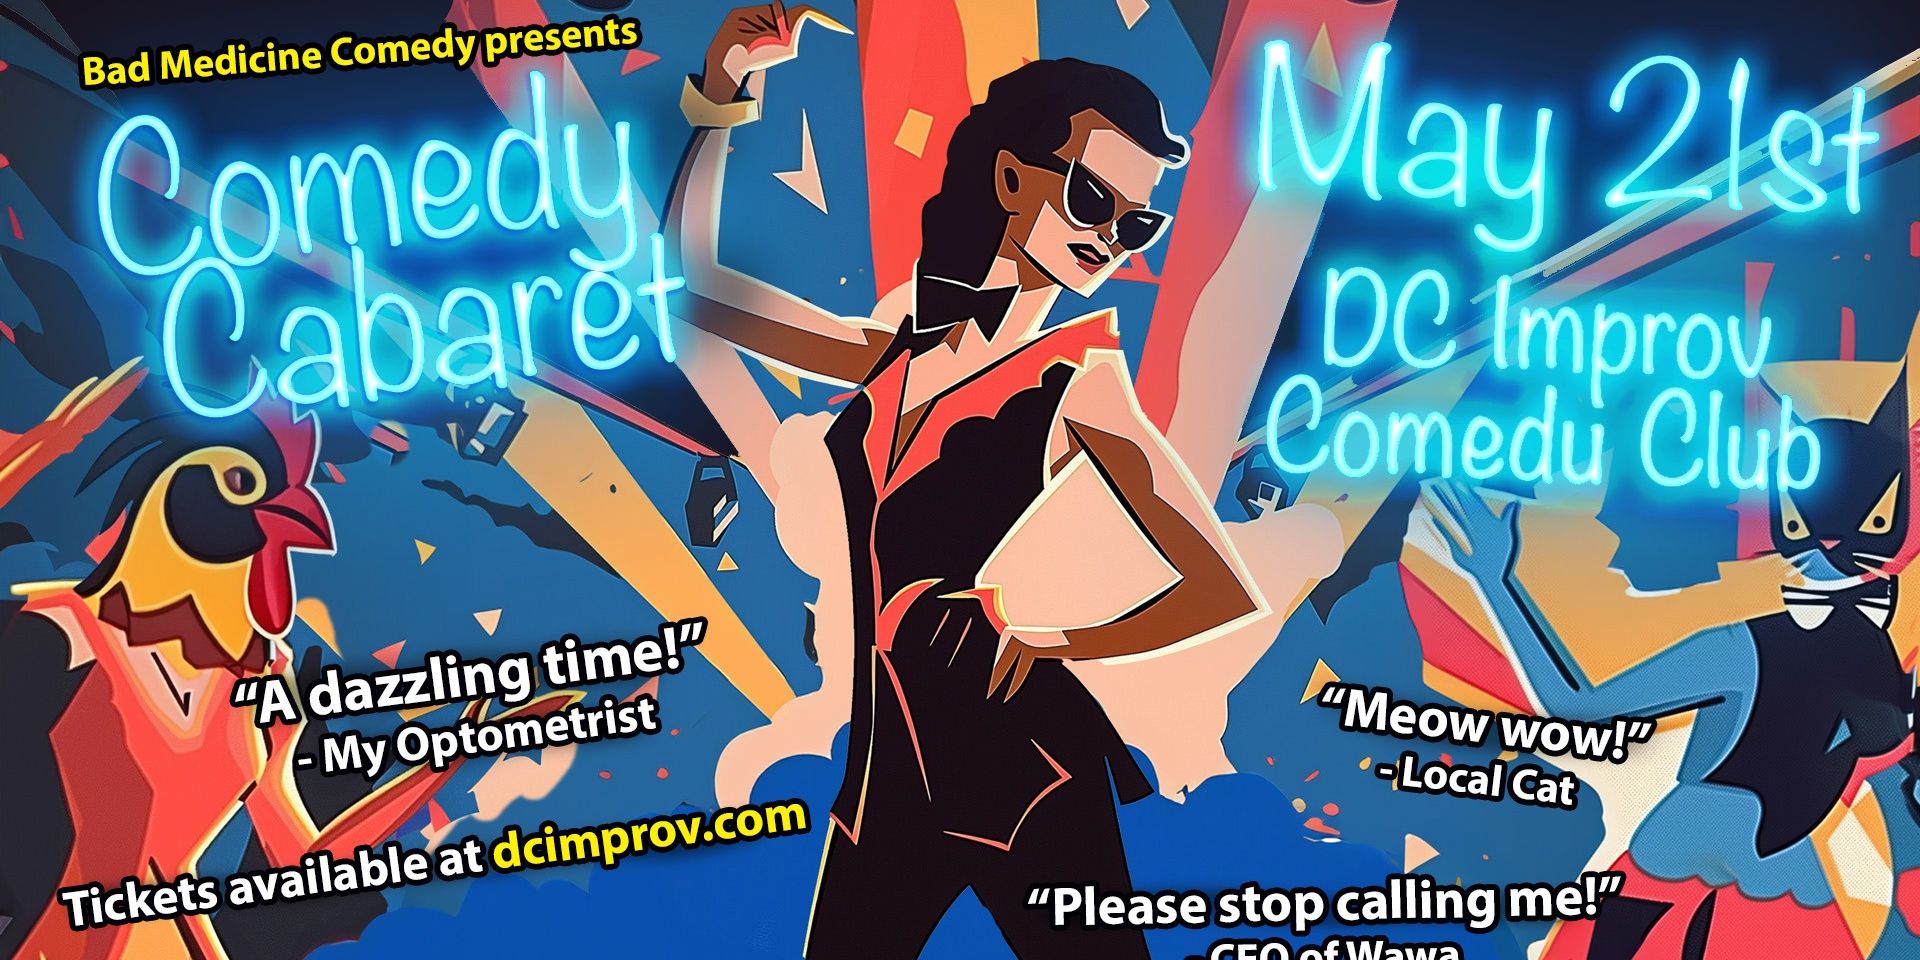 Bad Medicine's Comedy Cabaret promotional image